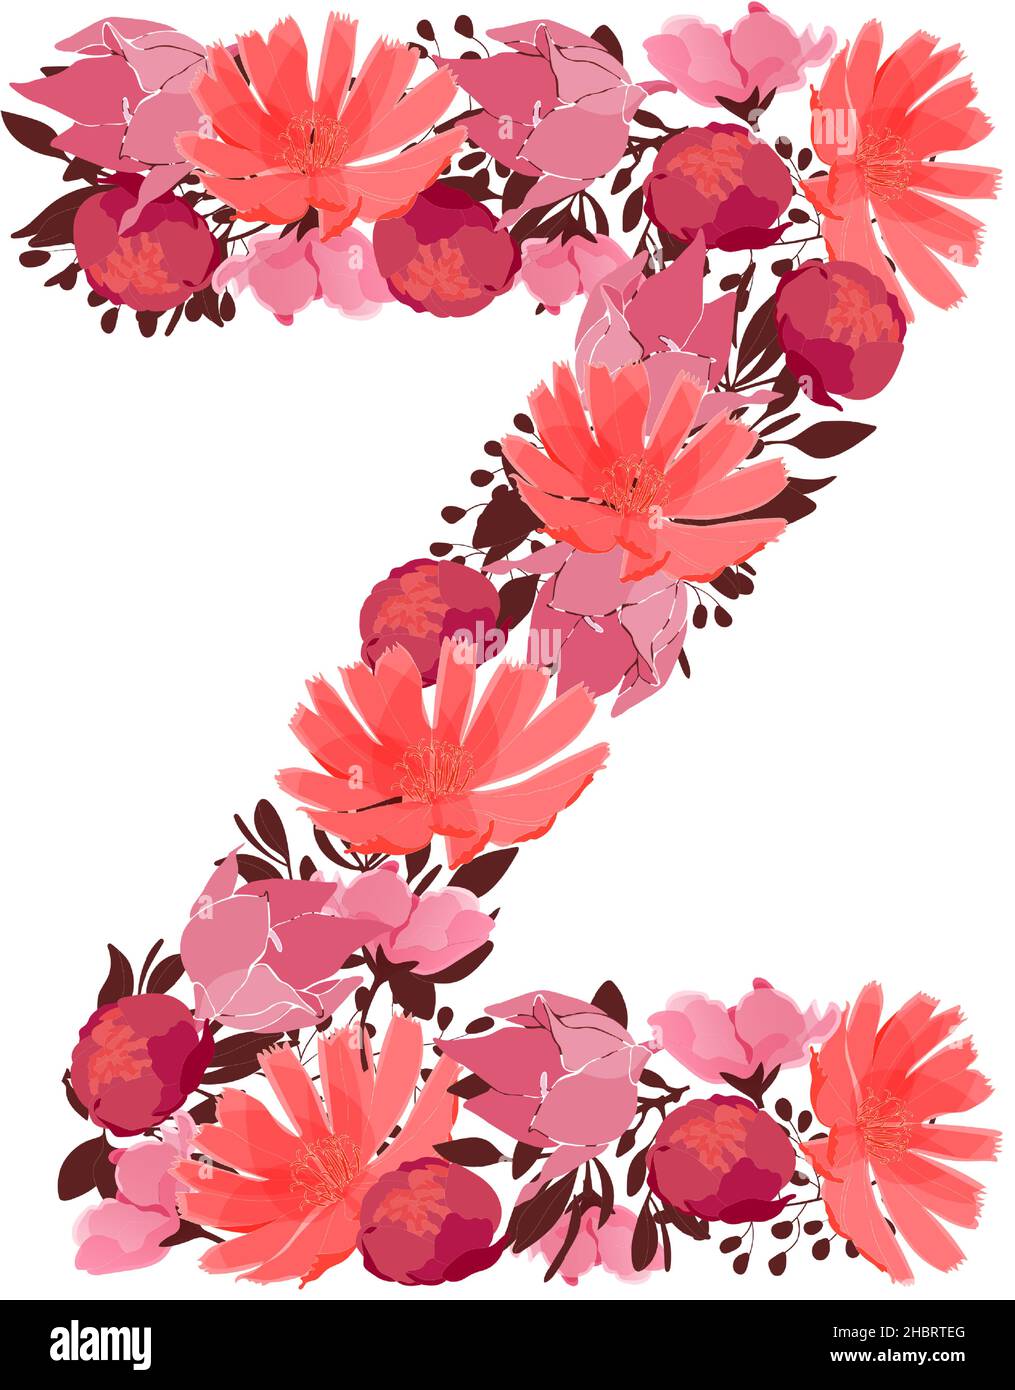 Lettera vettoriale floreale, carattere maiuscolo Z. monogramma botanico. Rosa, maroon, corallo fiori di colore a forma di una lettera grassetto. Illustrazione Vettoriale